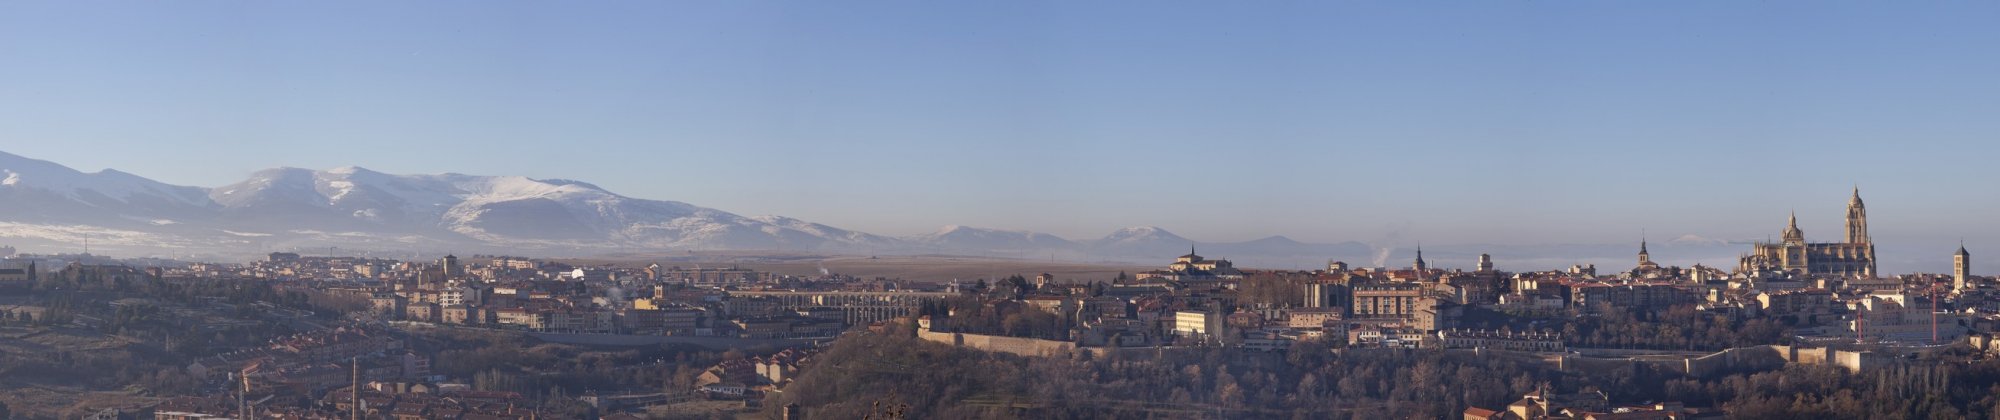 Parador Segovia